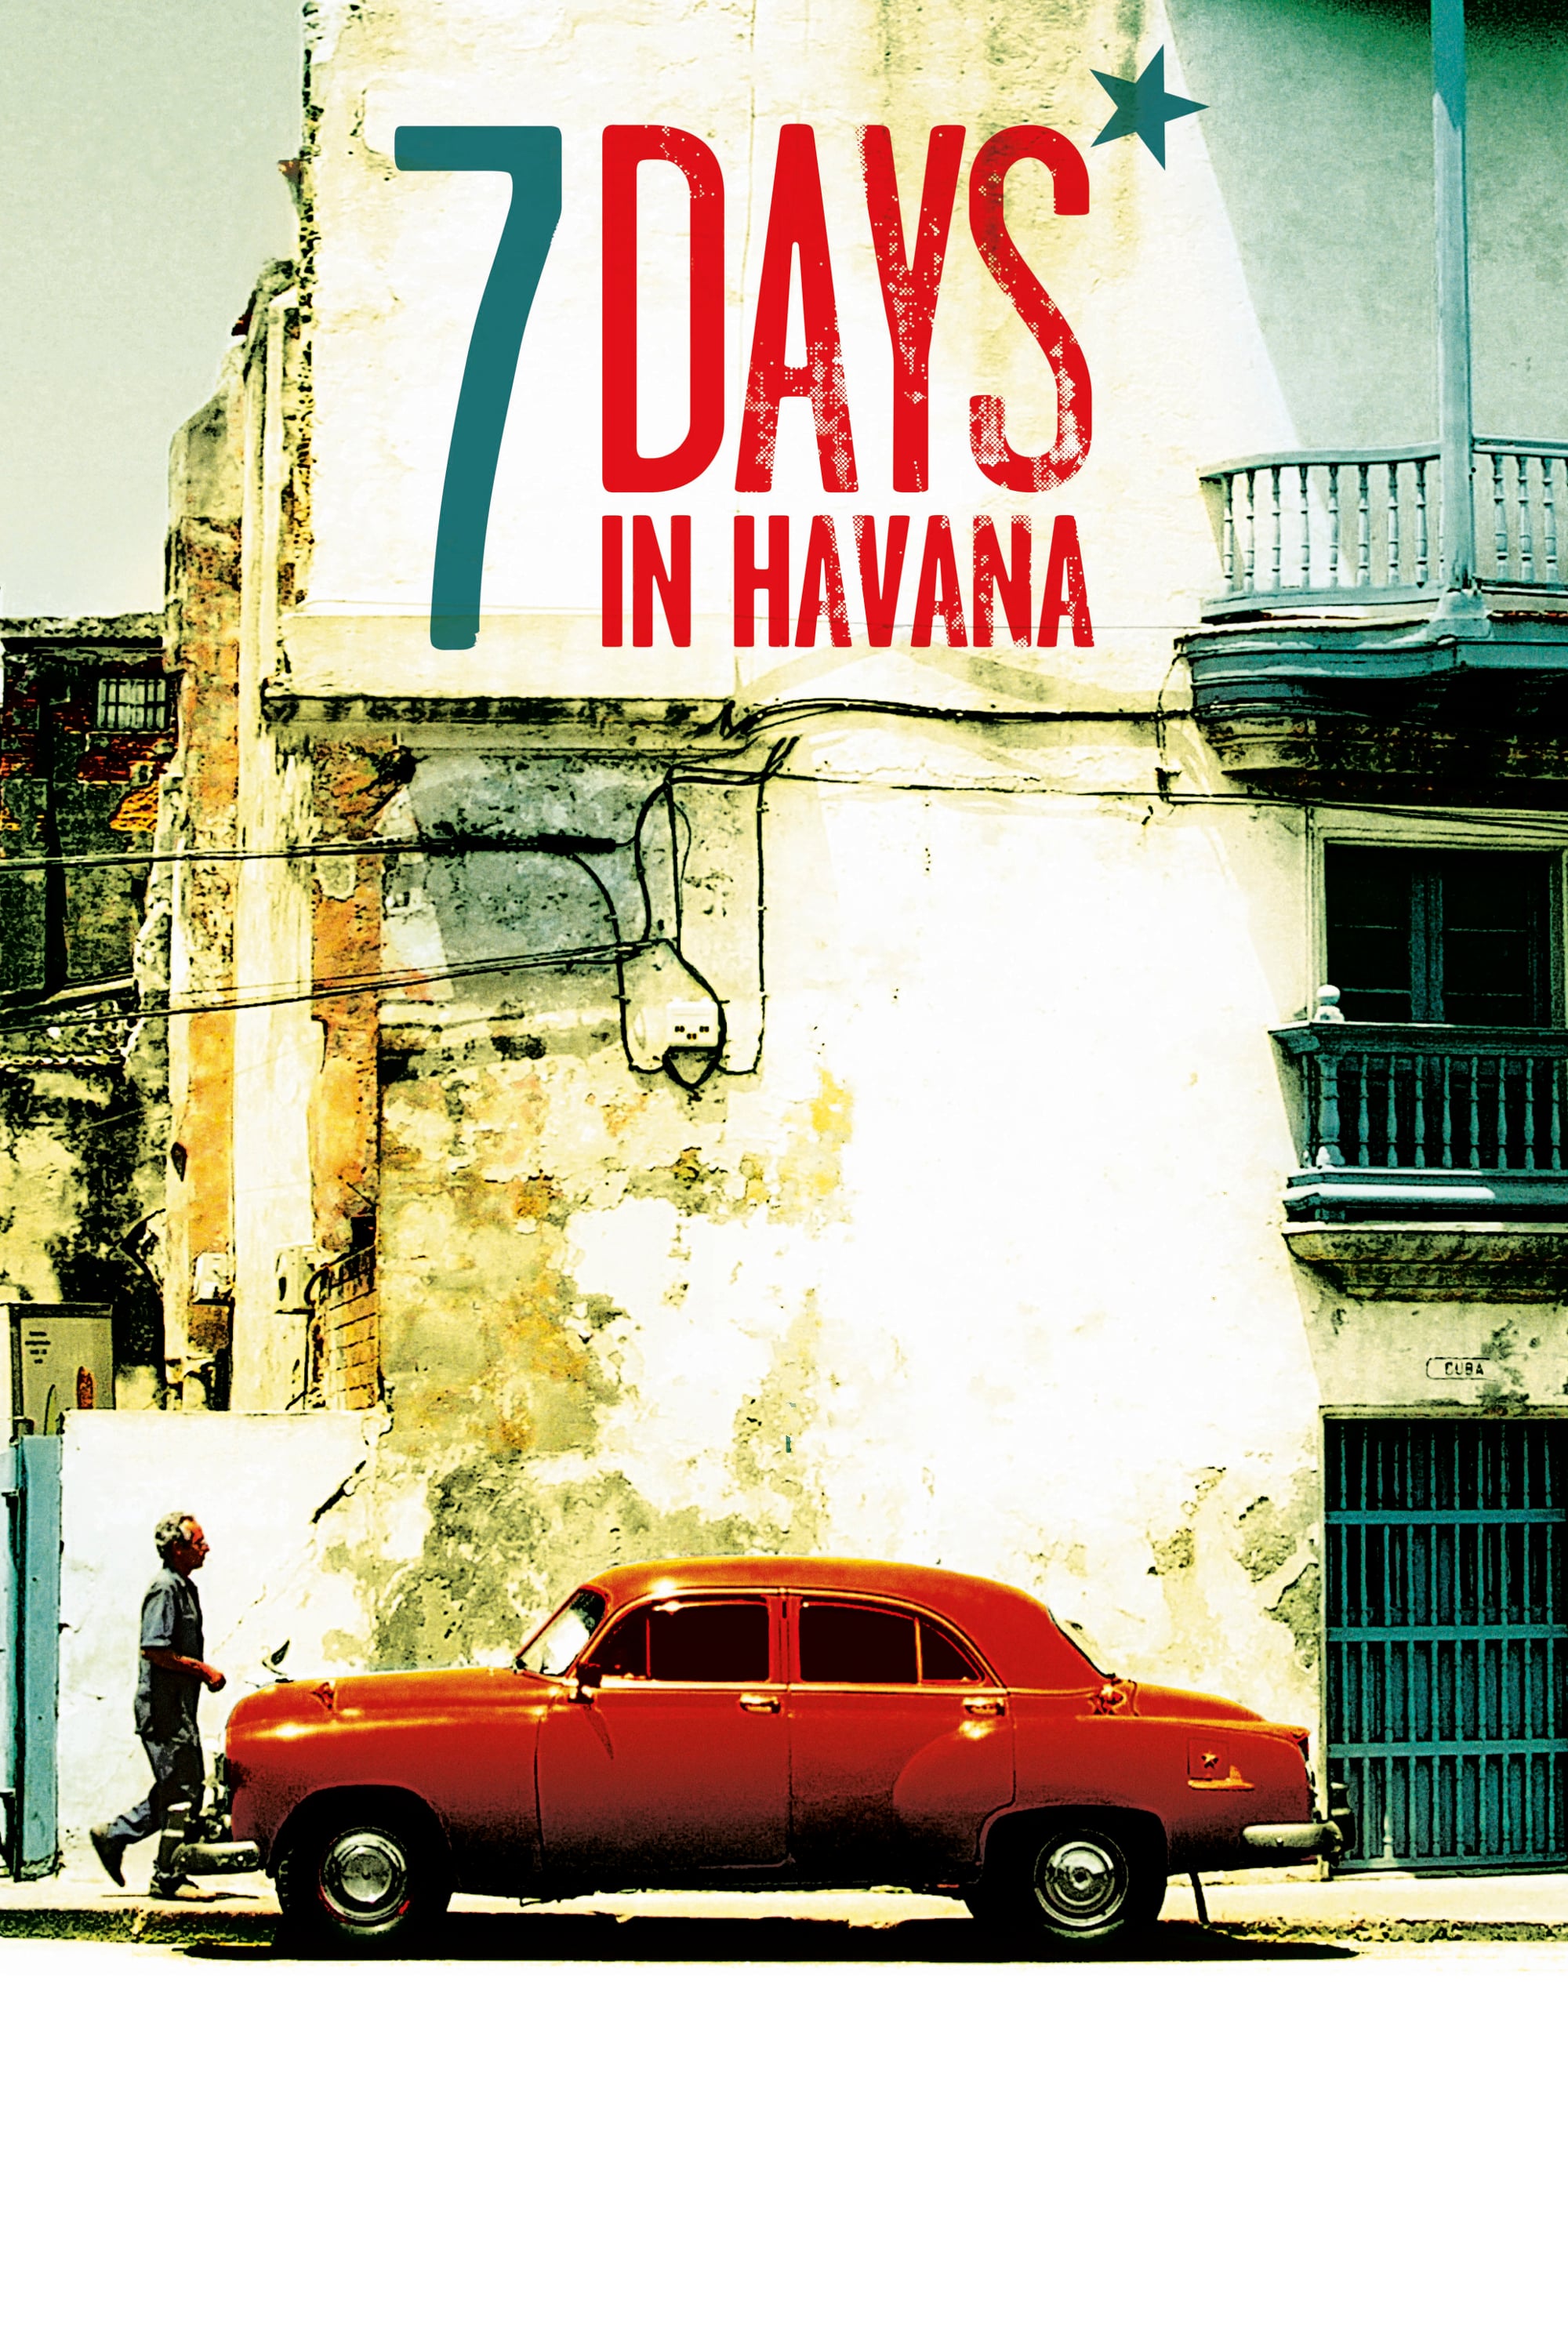 постер Гавана, я люблю тебя